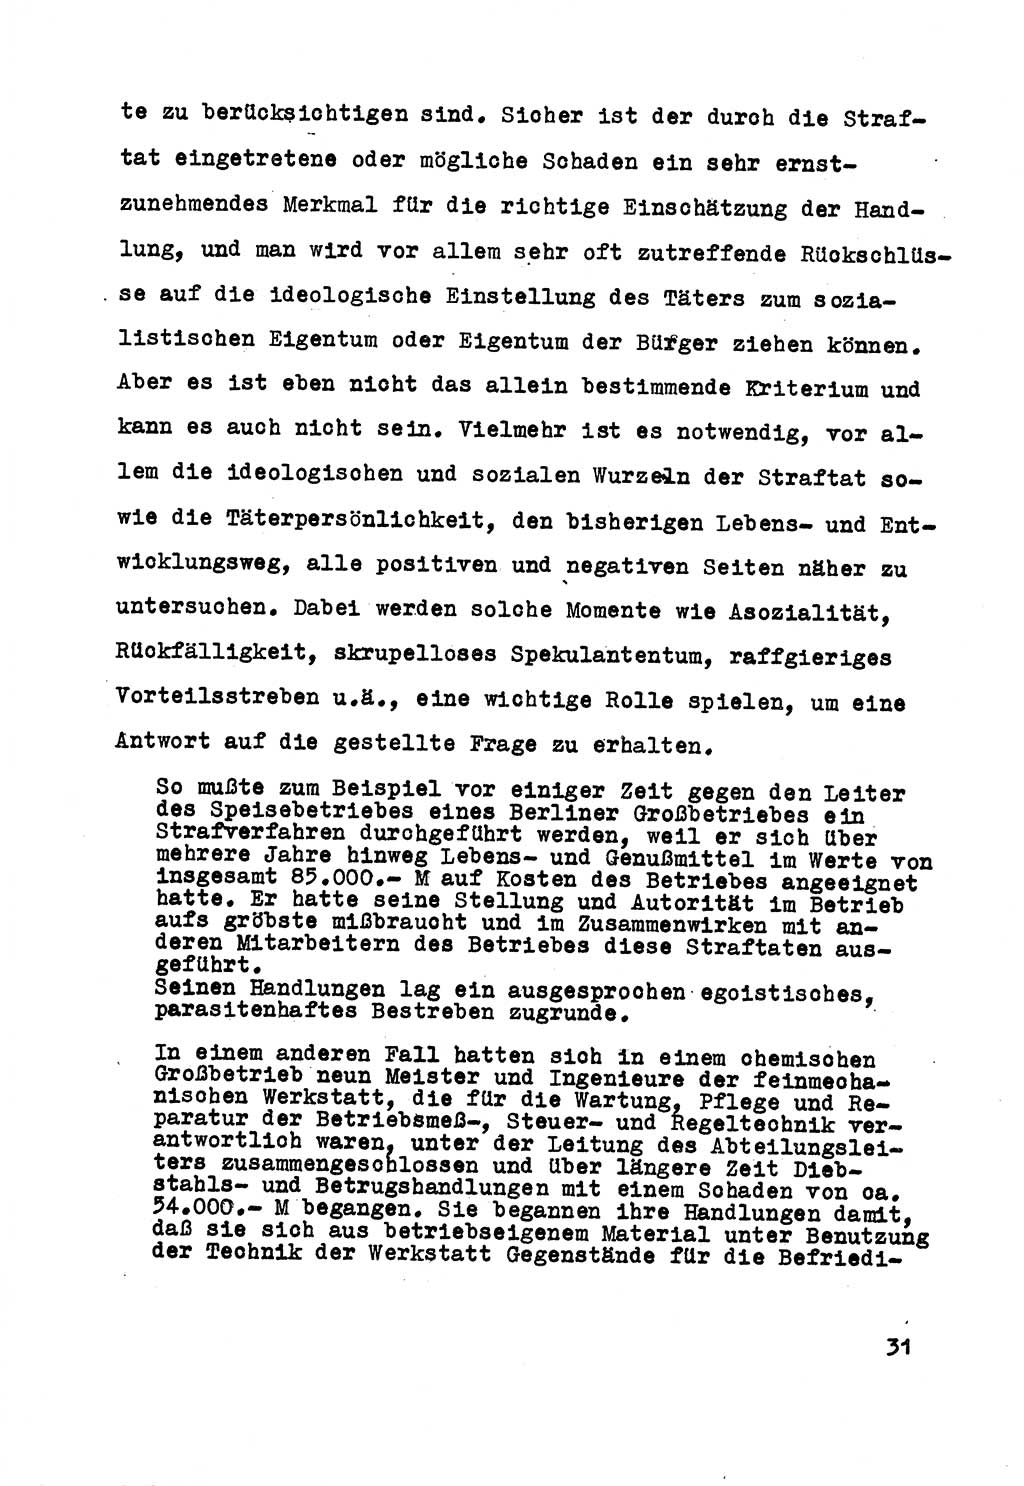 Strafrecht der DDR (Deutsche Demokratische Republik), Besonderer Teil, Lehrmaterial, Heft 5 1970, Seite 31 (Strafr. DDR BT Lehrmat. H. 5 1970, S. 31)